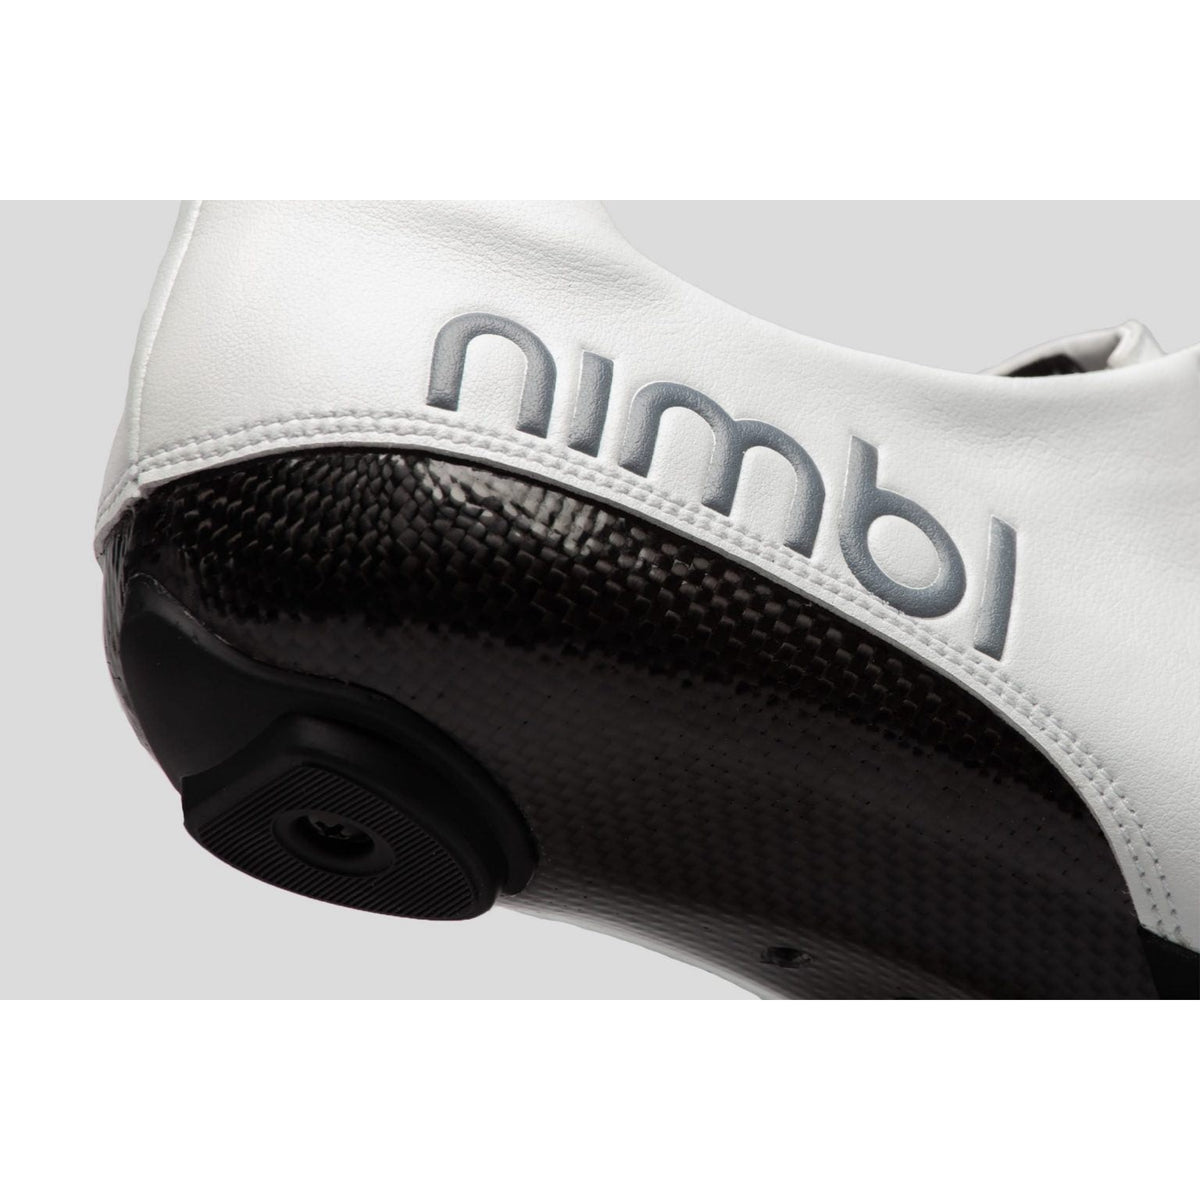 Nimbl Air Cycling Shoe